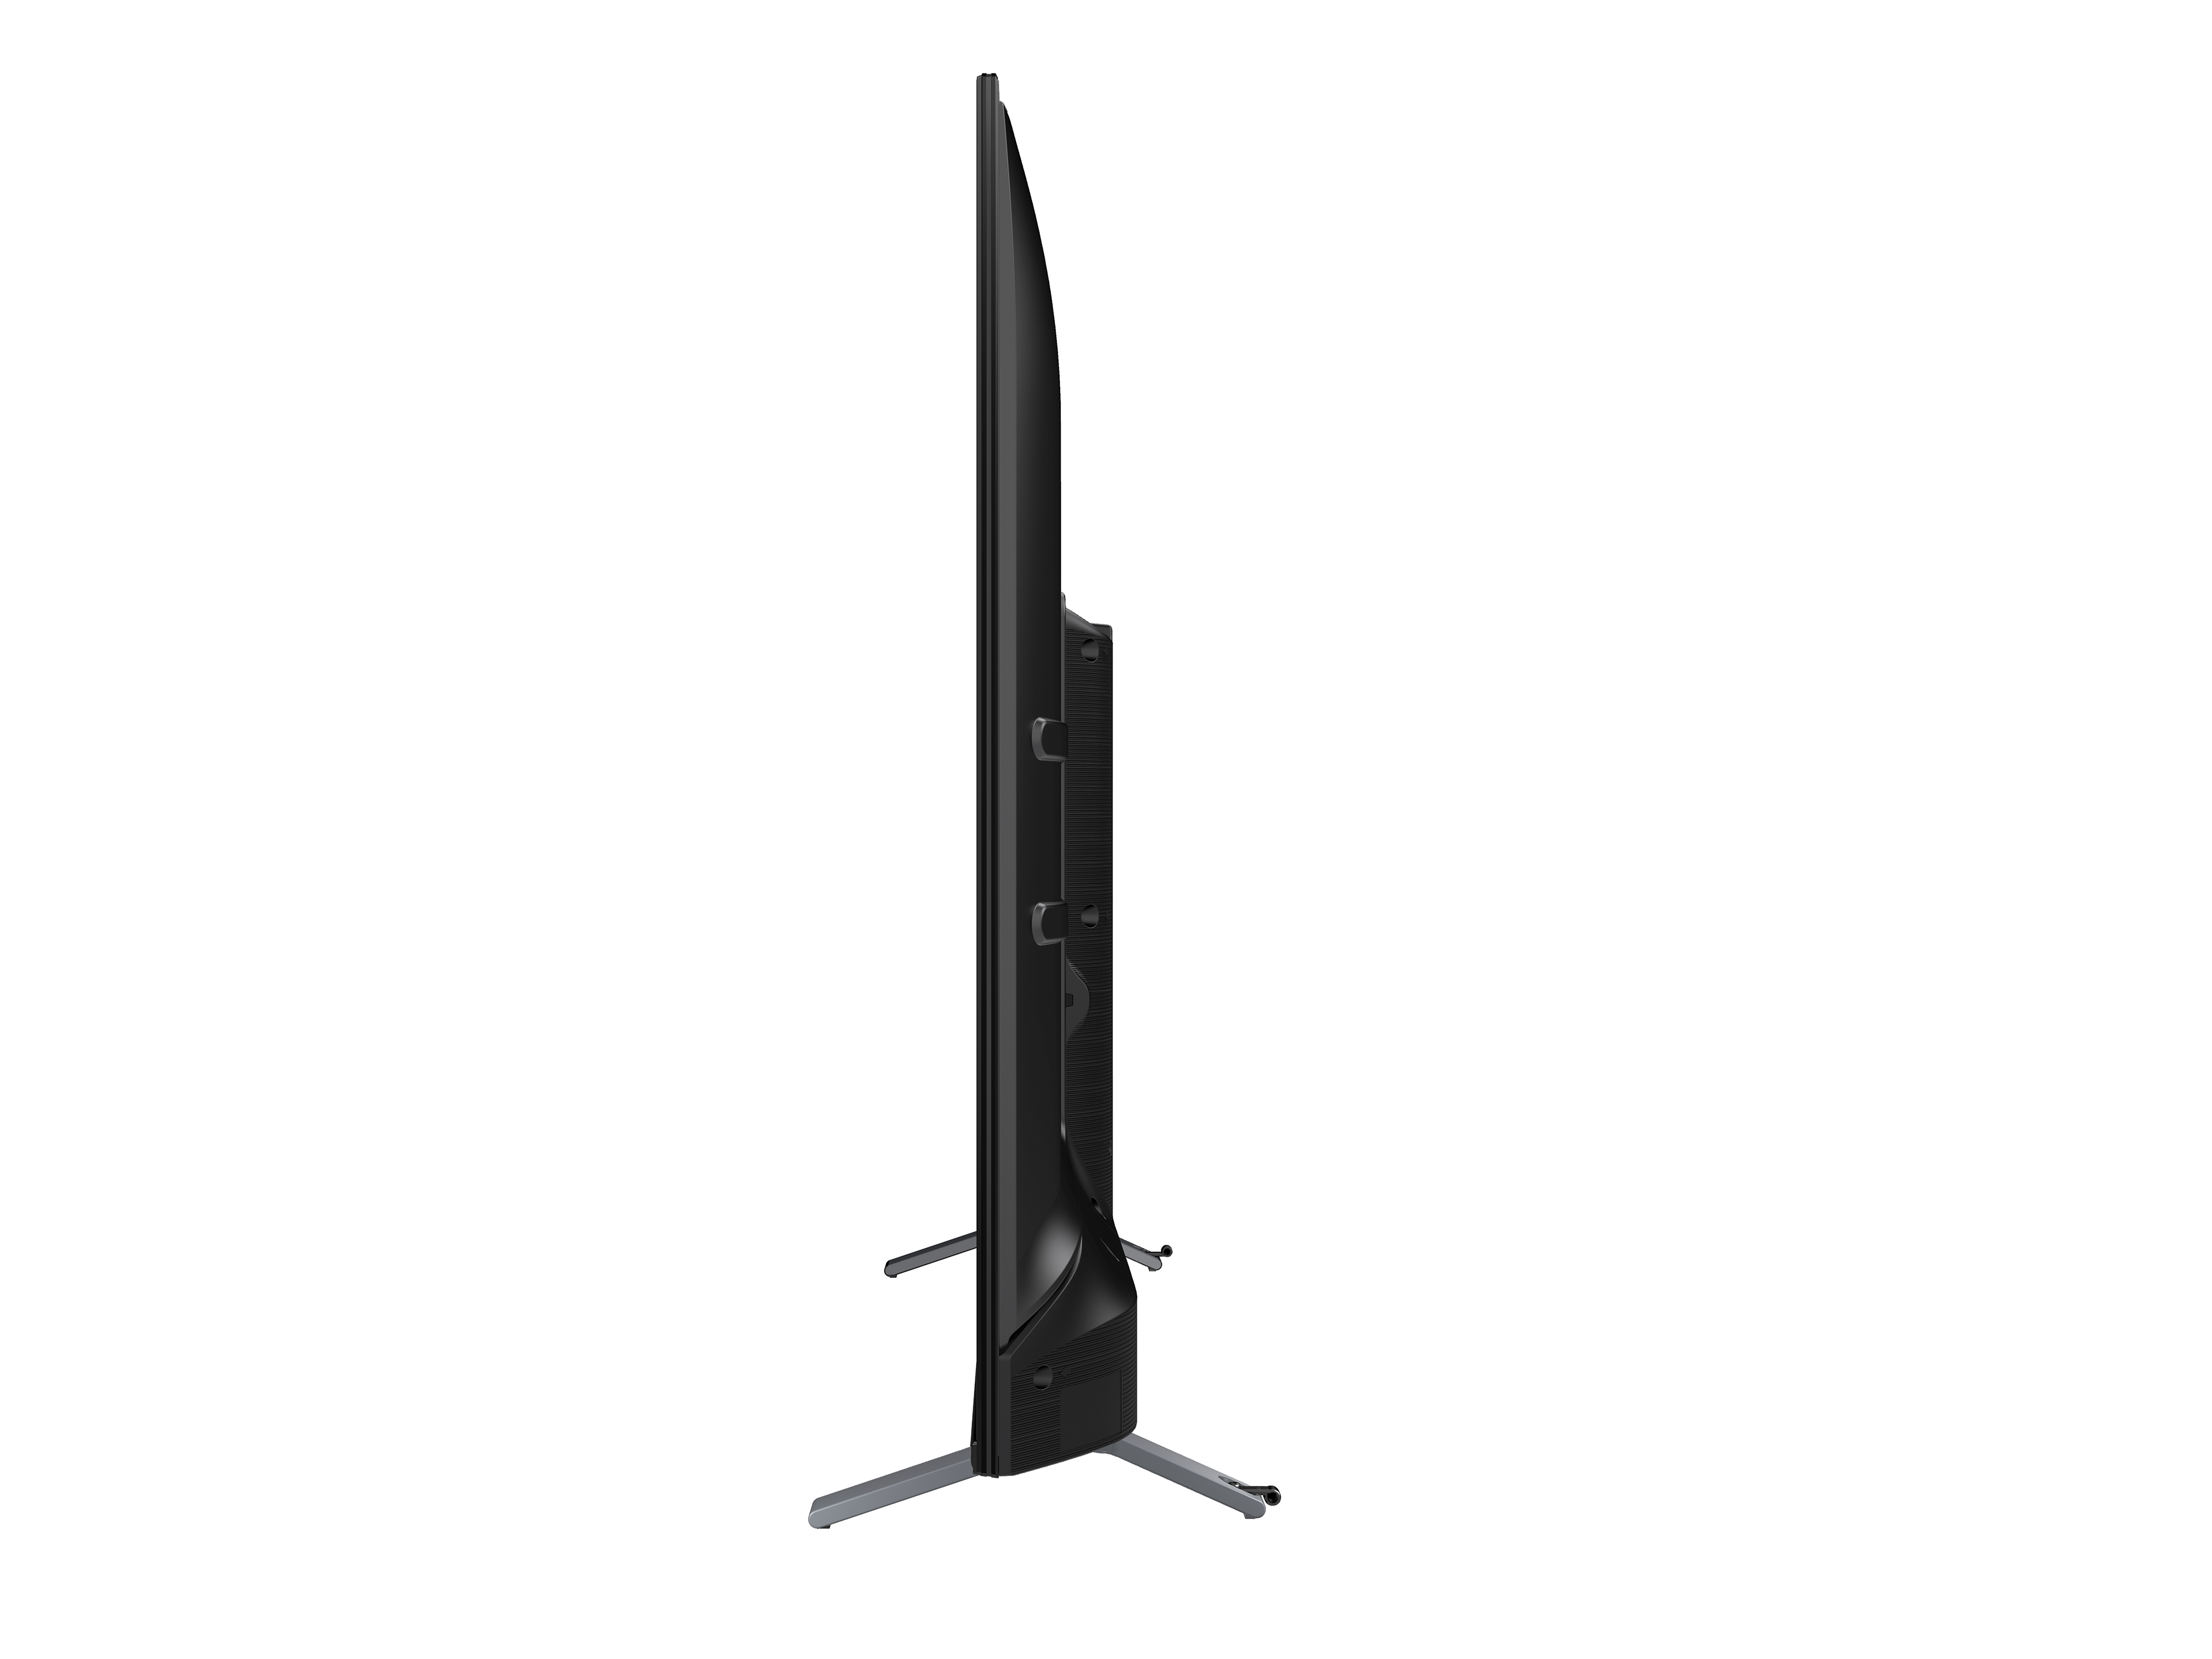 SMART 4K - GOOGLE TV TOSHIBA 65 inch (65C350LP) – Chống ánh sáng xanh - Tìm kiếm bằng giọng nói - Tràn viền - Công nghệ tái tạo màu tiên tiến - Âm thanh Dolby Audio hiện đại - Loa 24W - Wifi 2.4/5GHz - Hàng chính hãng